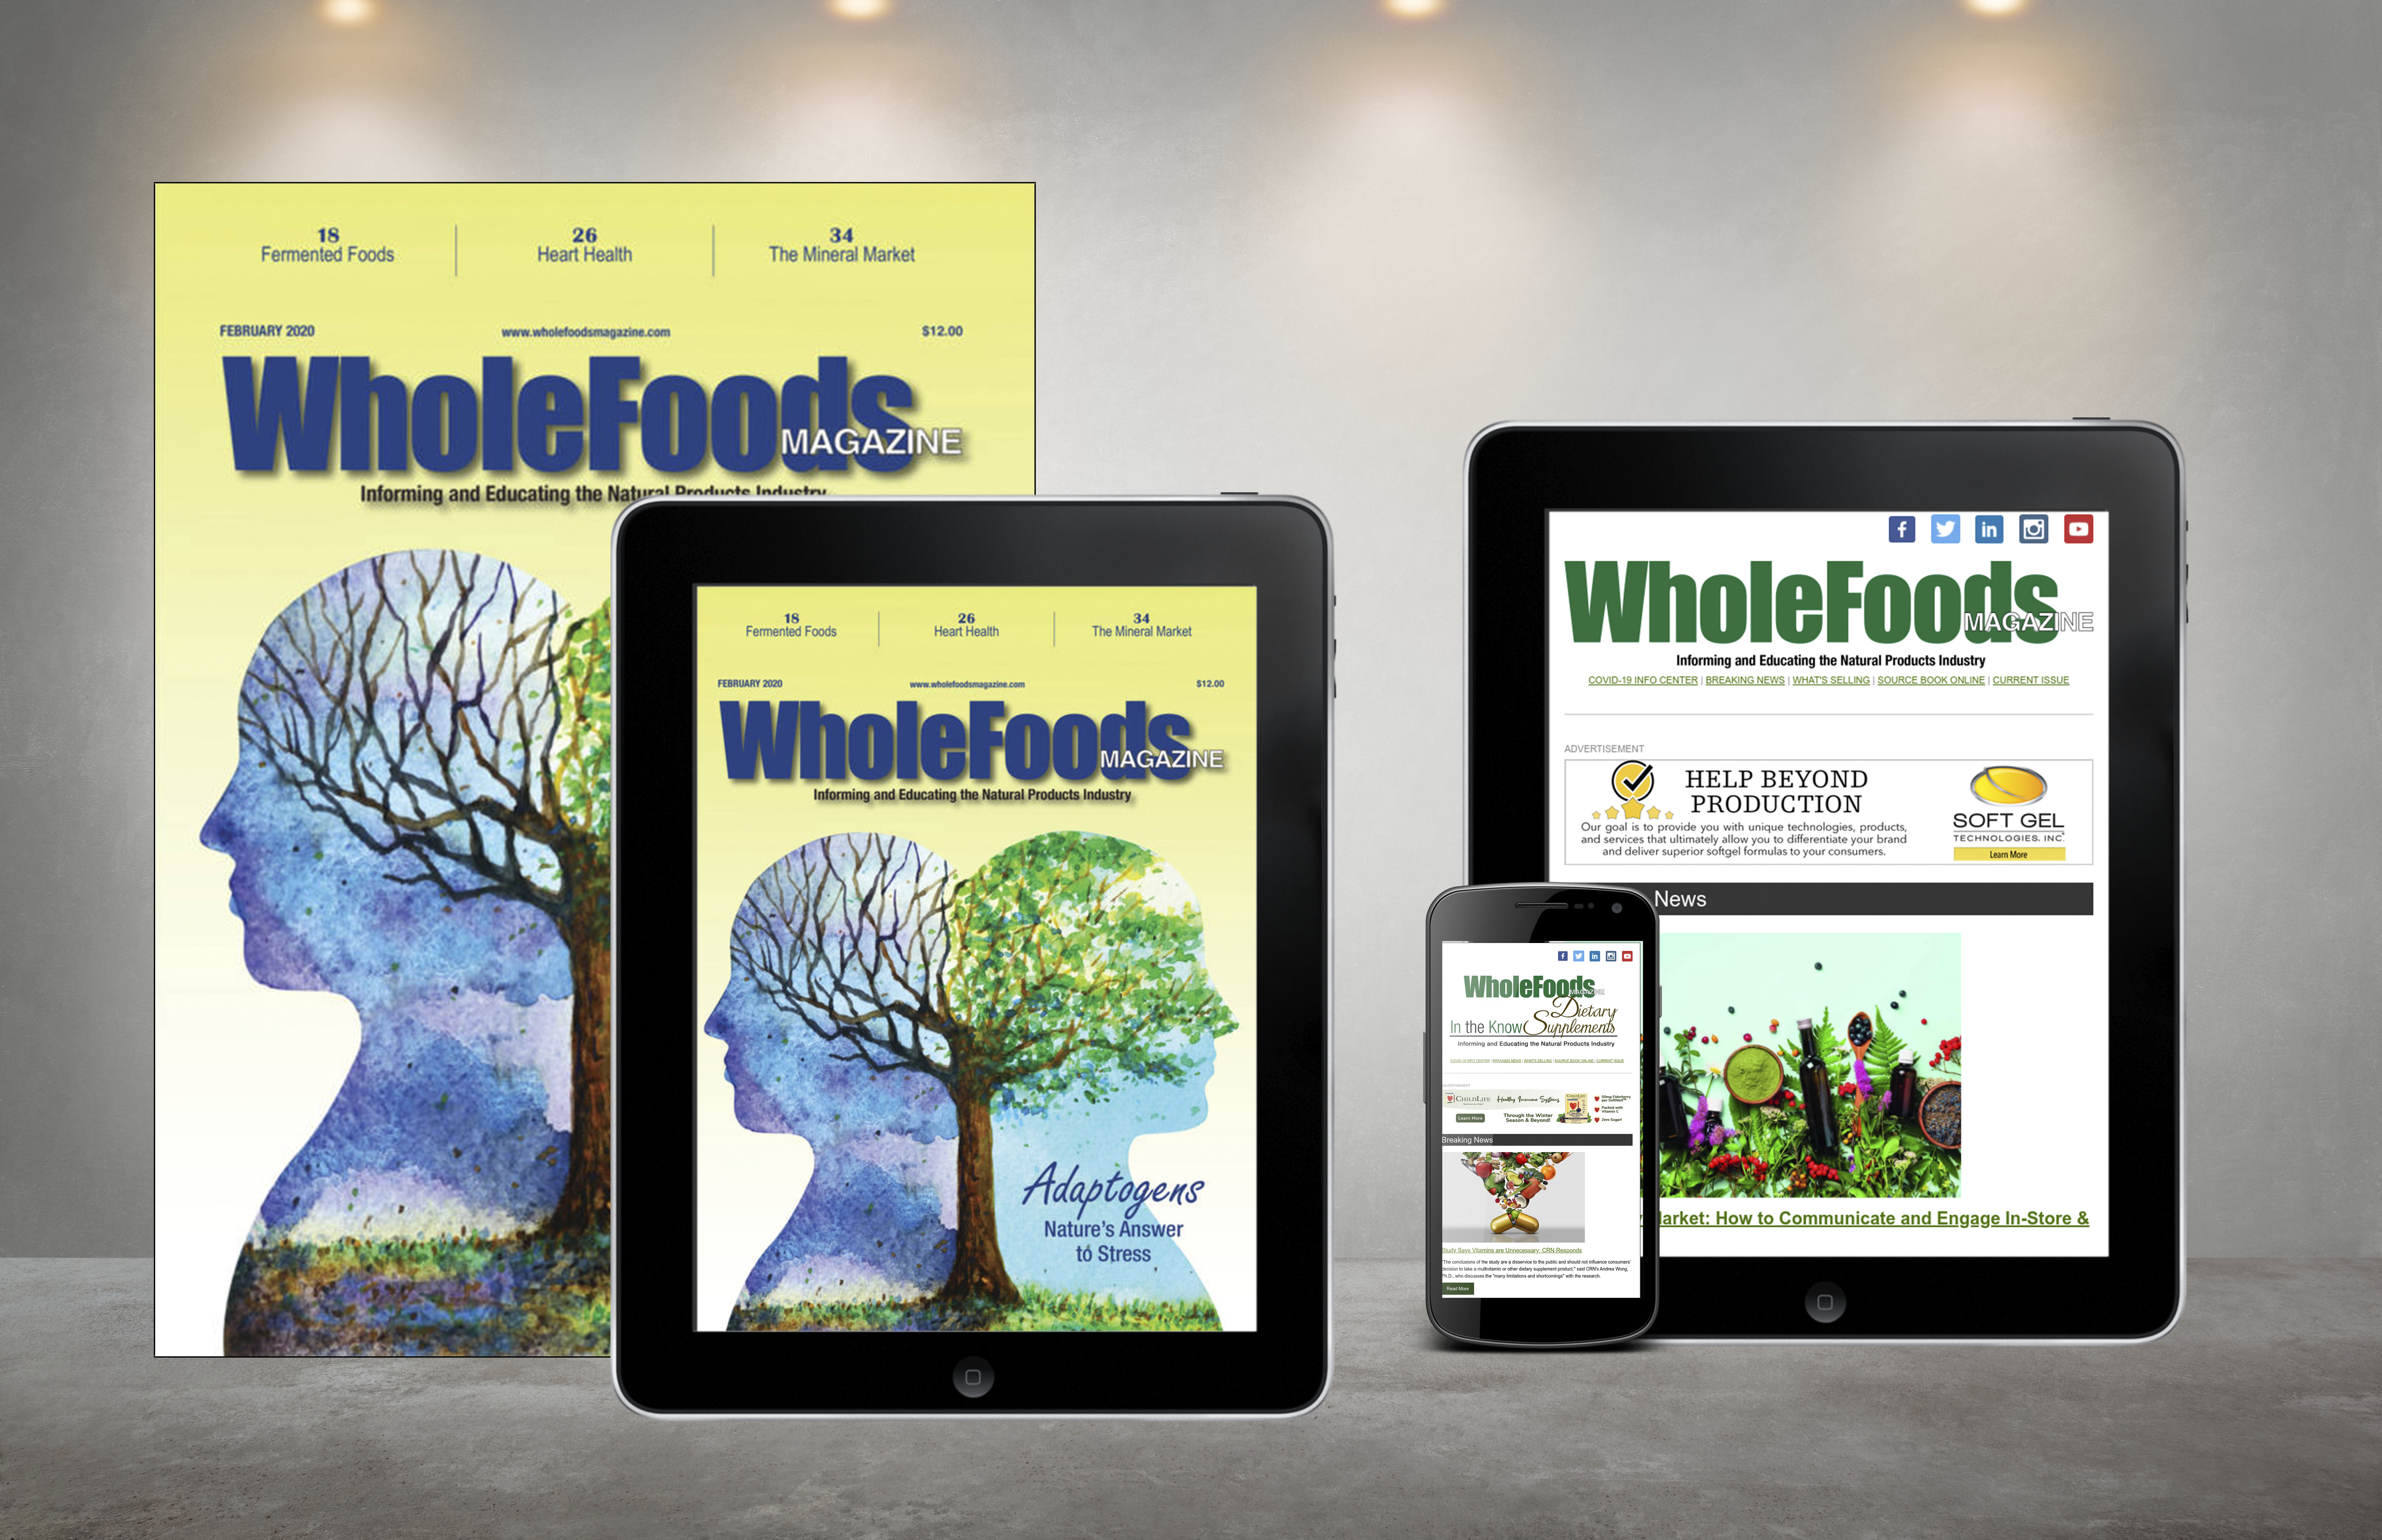 WholeFoods Magazine newsletter collage